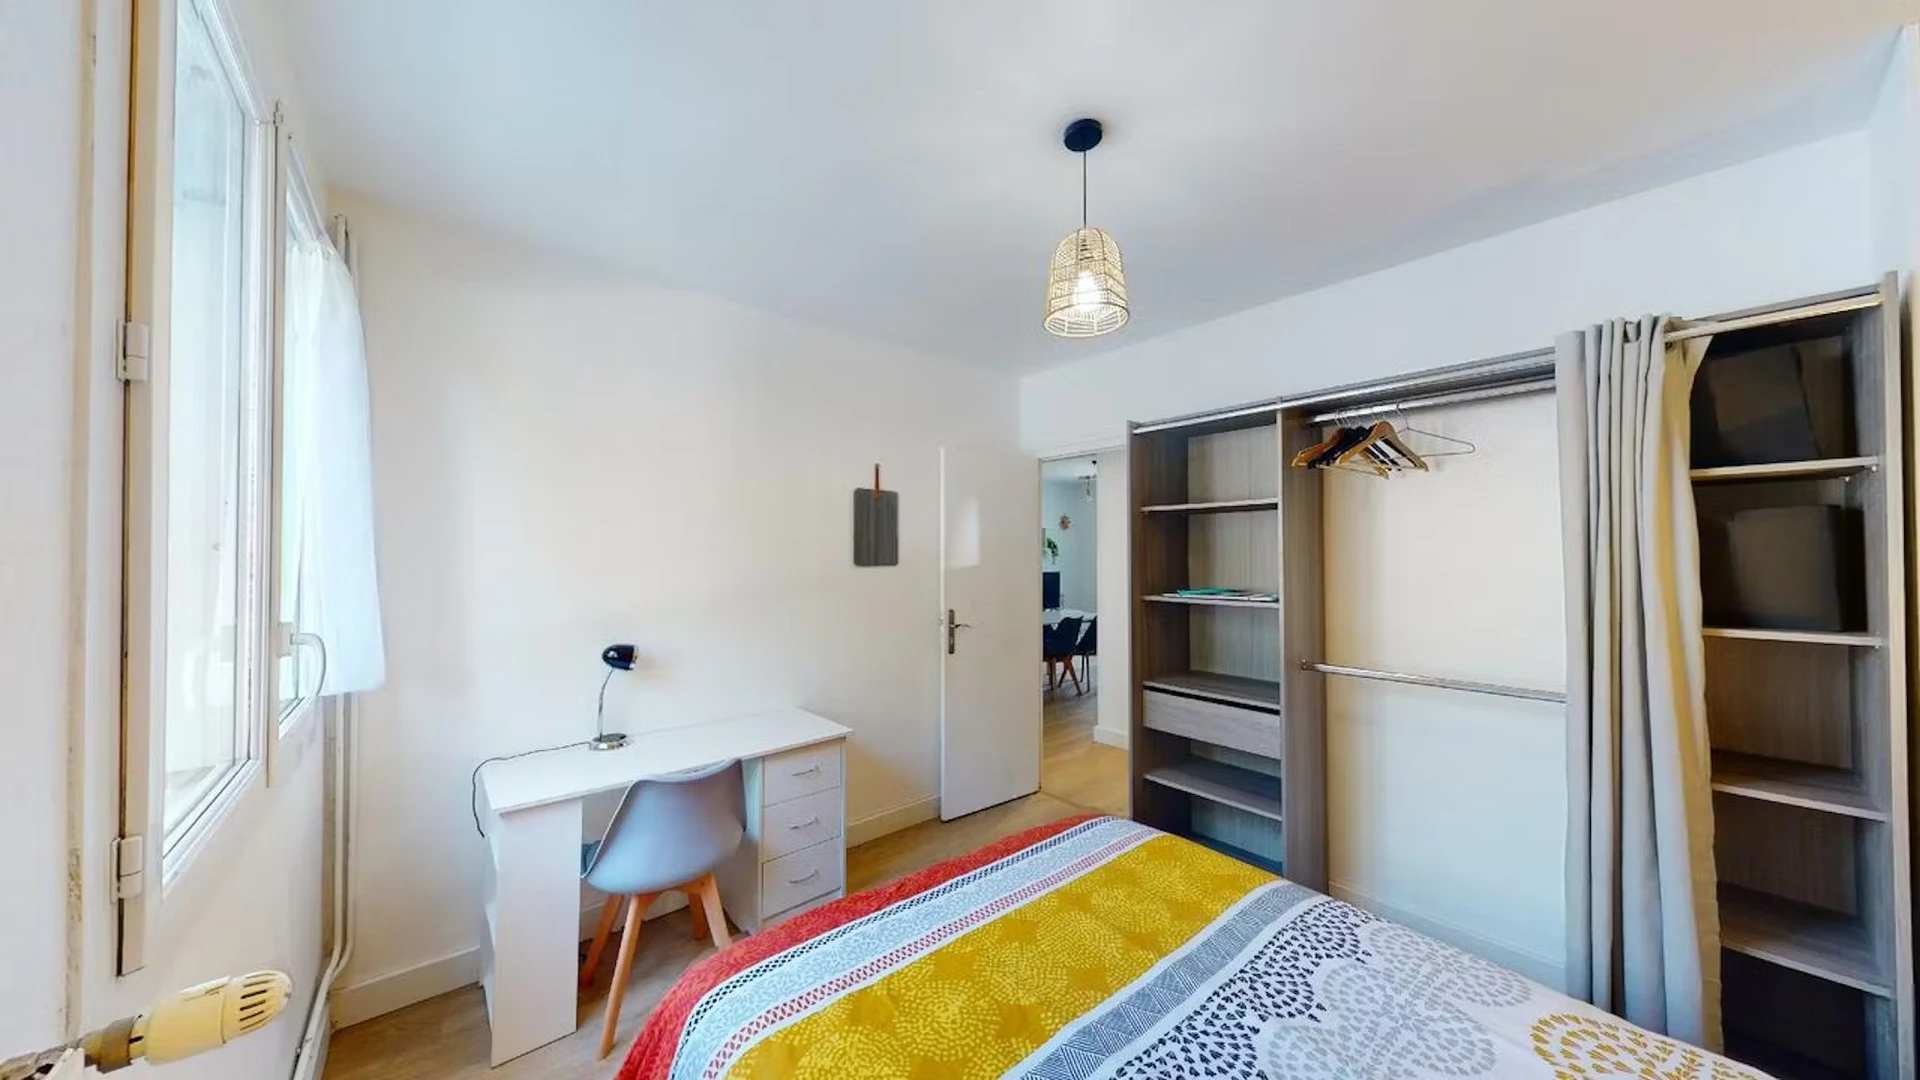 Alquiler de habitaciones por meses en Pau